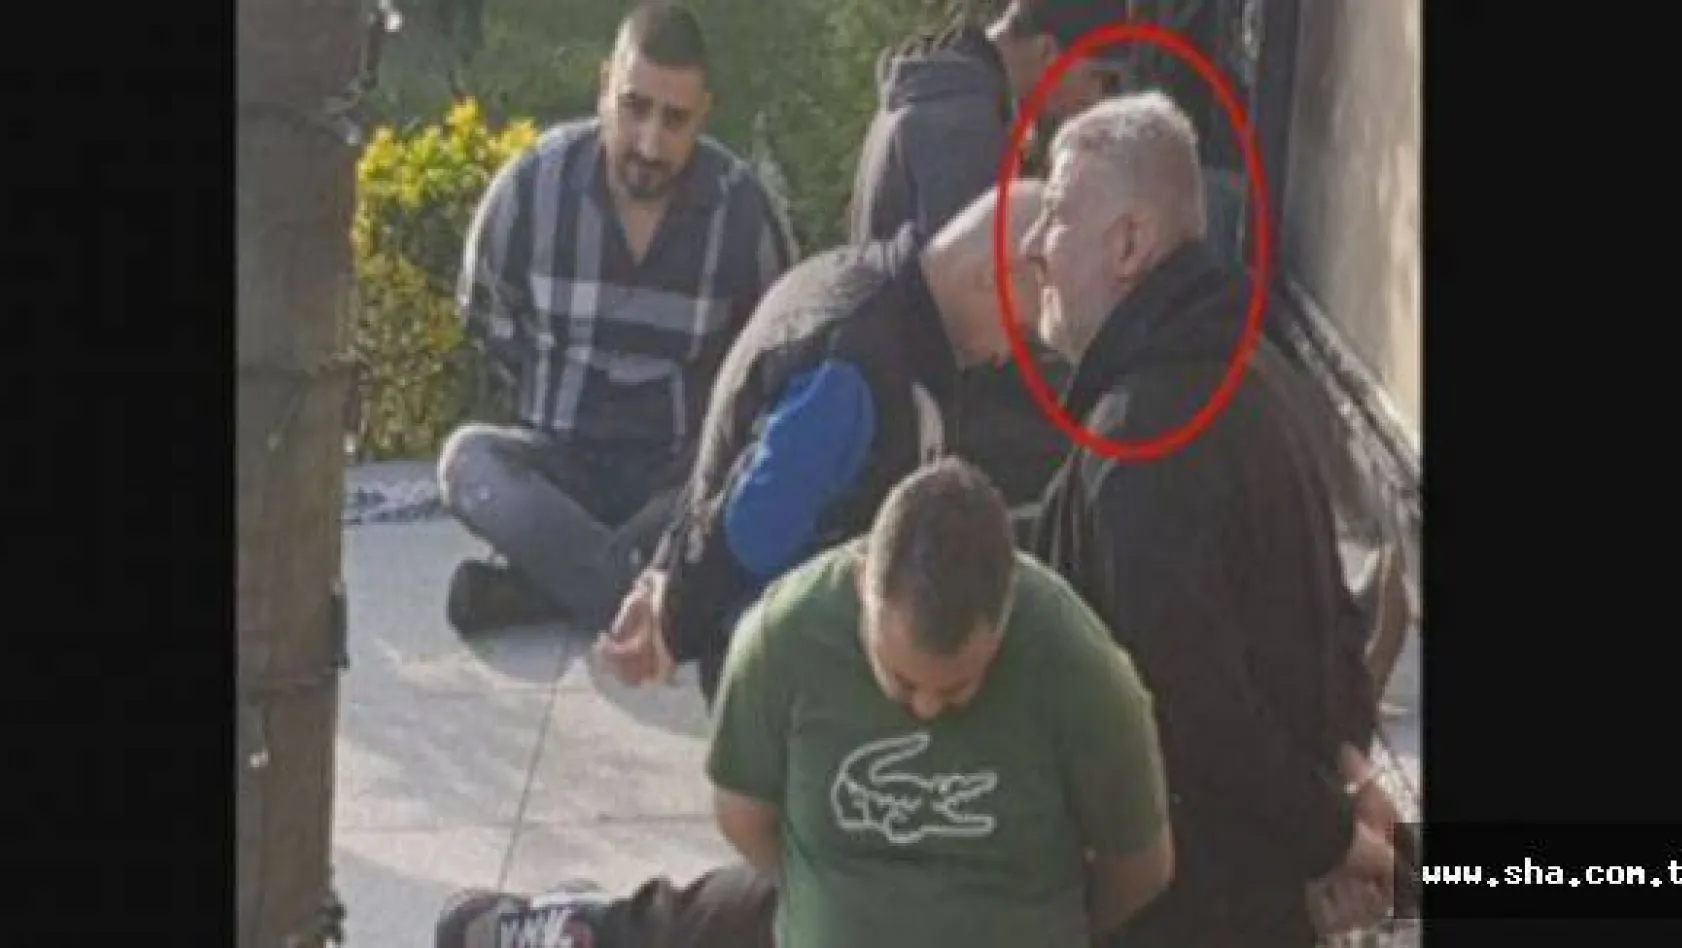 İranlı uyuşturucu baronu Zindaşti'nin yakalanma anına ait fotoğraf ortaya çıktı